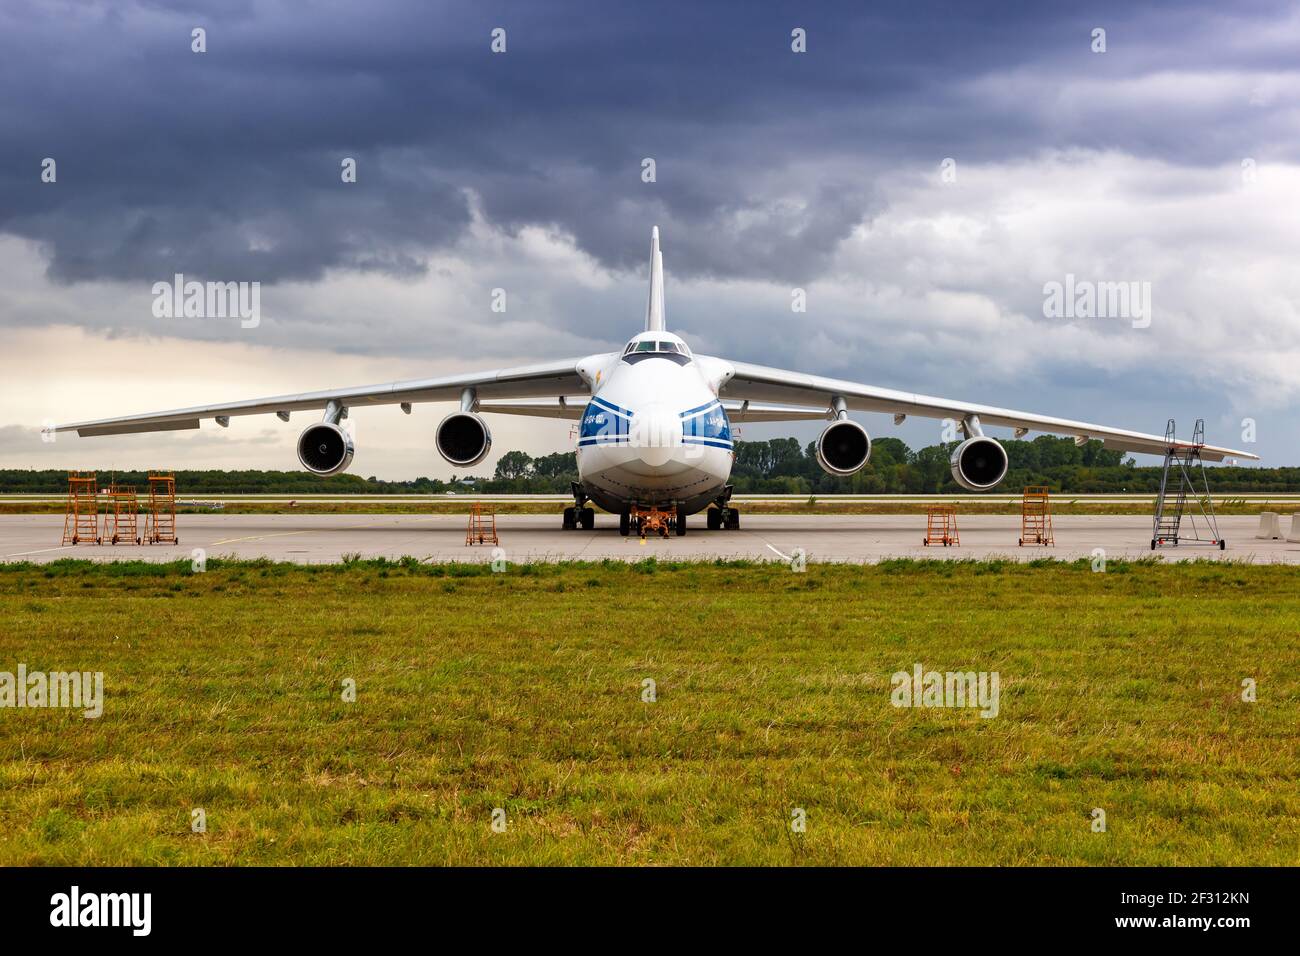 Schkeuditz, Allemagne - 31 août 2017: Volga-Dnepr Airlines Antonov an-124-100 avion à l'aéroport de Leipzig Halle en Allemagne. Banque D'Images